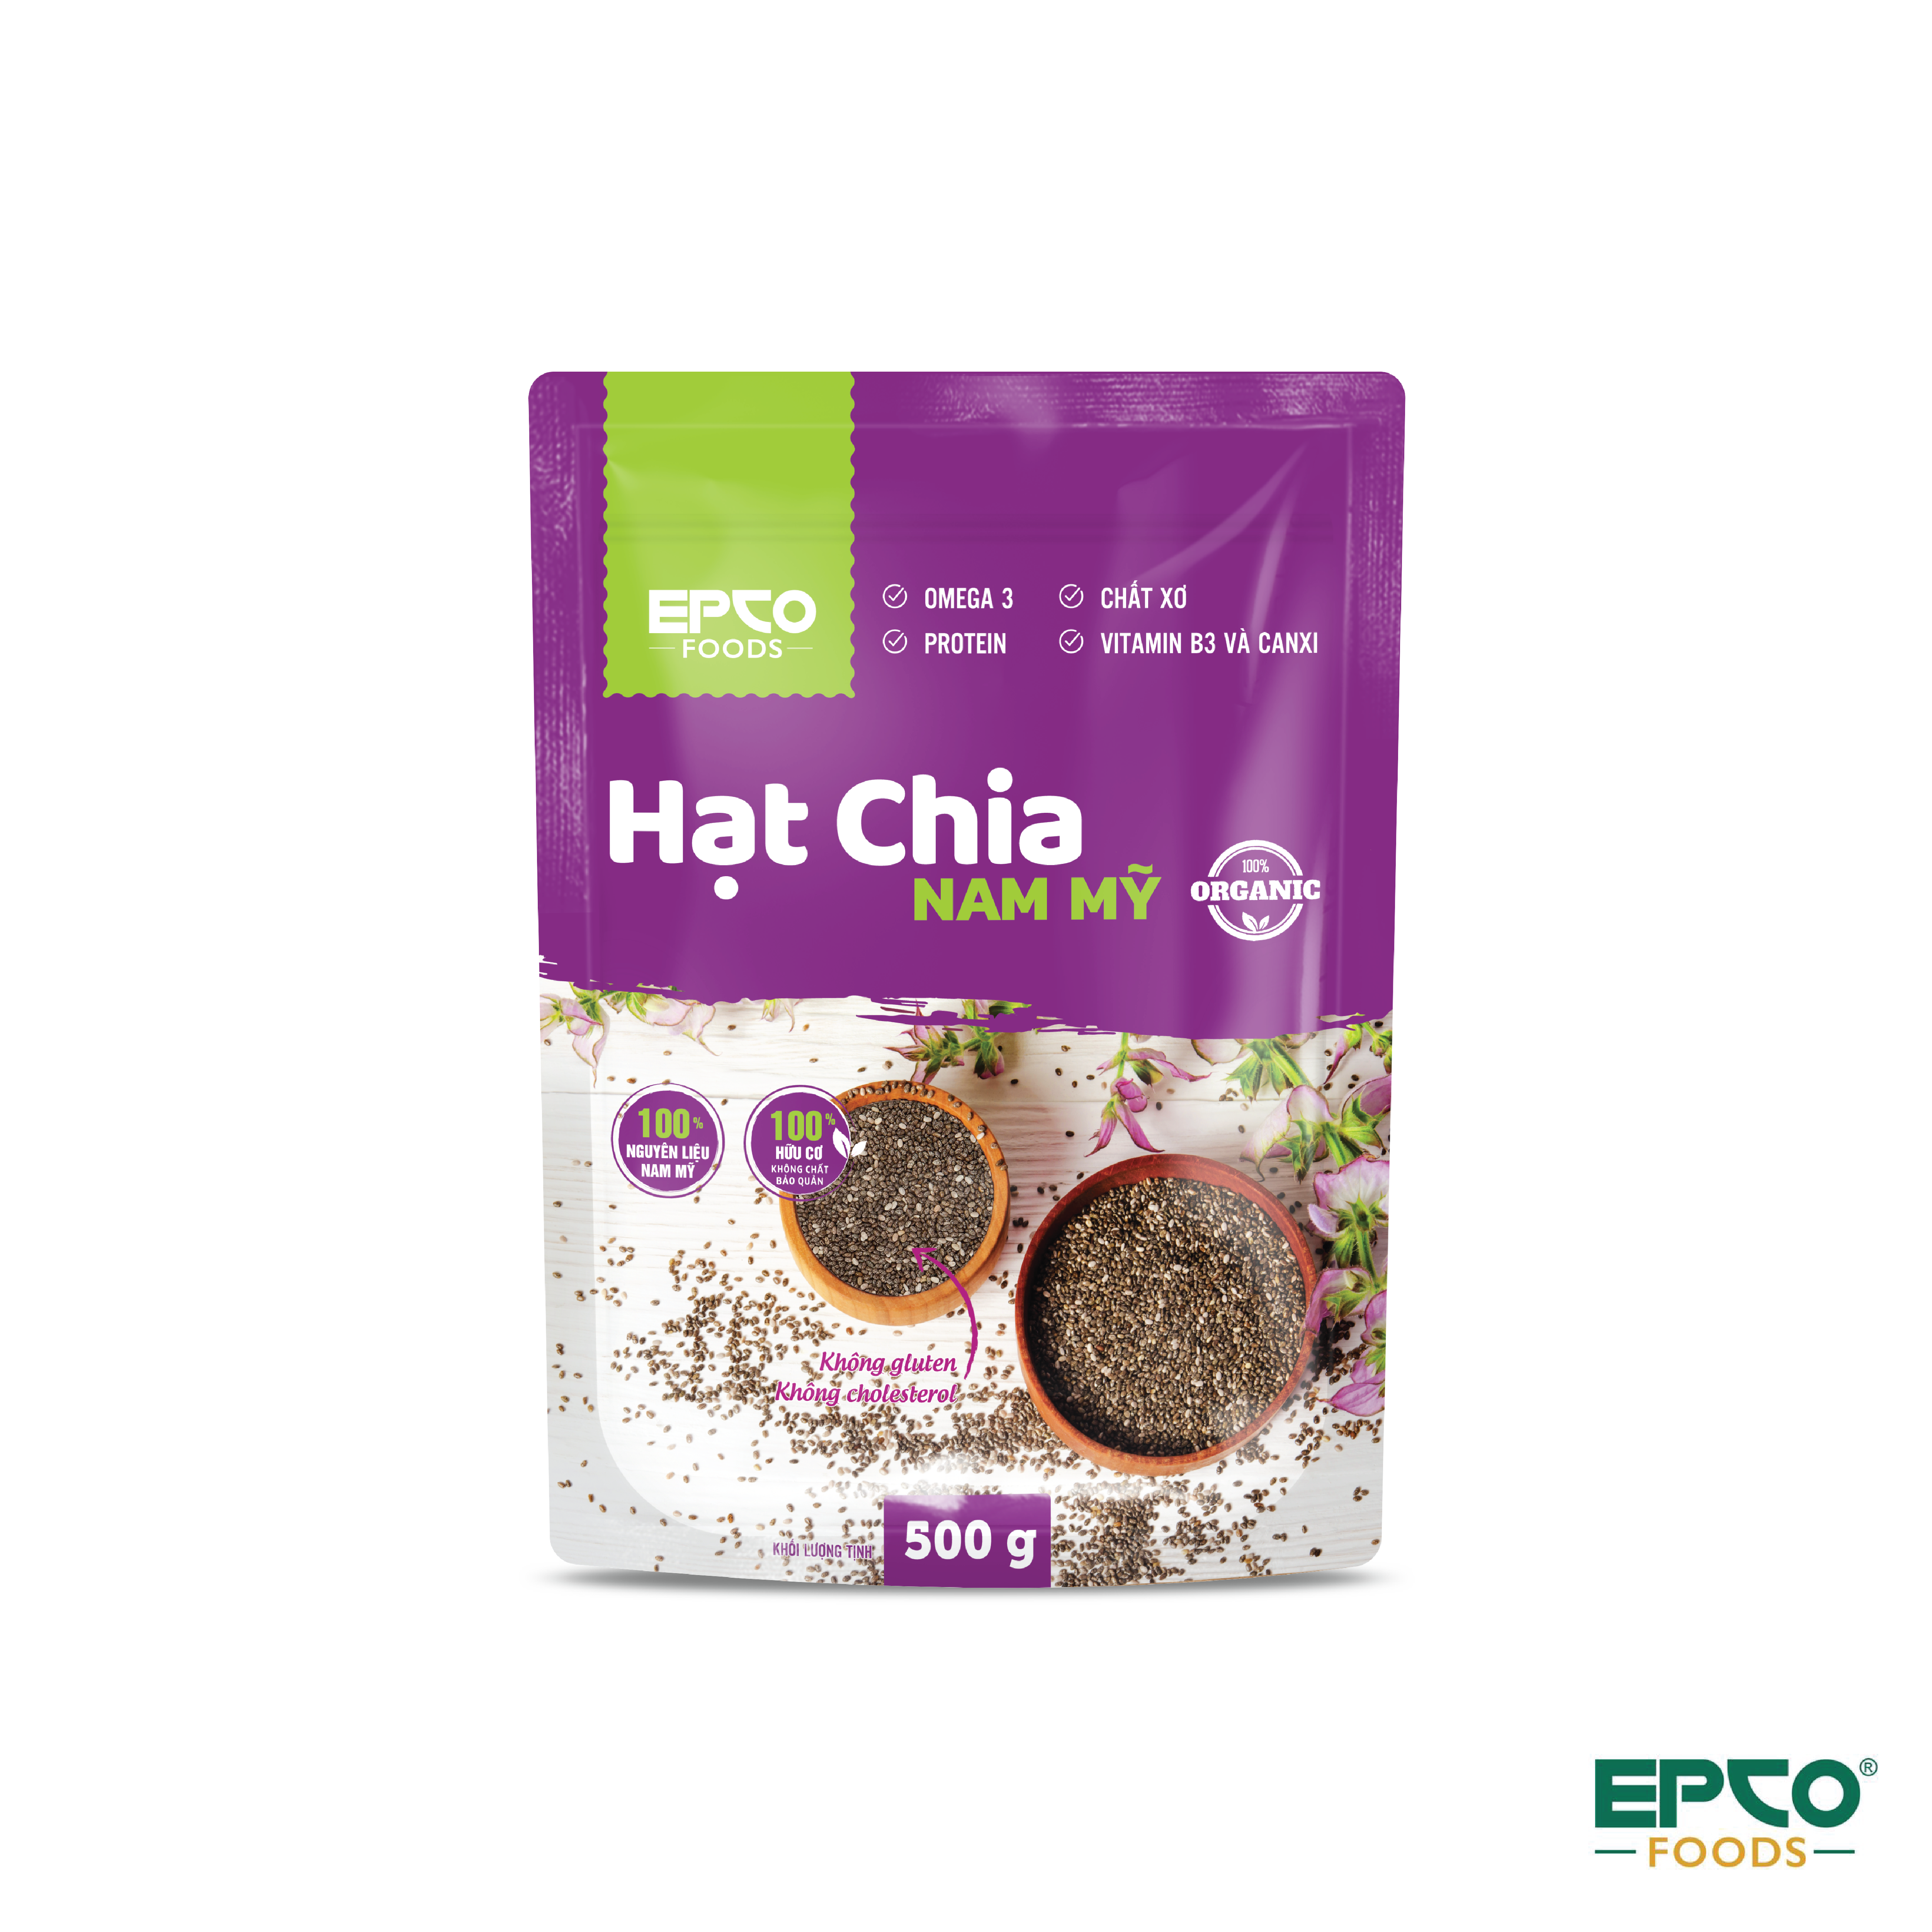 Chia seeds EPCO Foods: Thử trải nghiệm hương vị tuyệt vời của hạt Chia từ EPCO Foods. Xem ảnh liên quan đến keyword này để tìm hiểu thêm về công dụng và cách sử dụng hạt Chia trong chế độ ăn uống lành mạnh và dinh dưỡng.